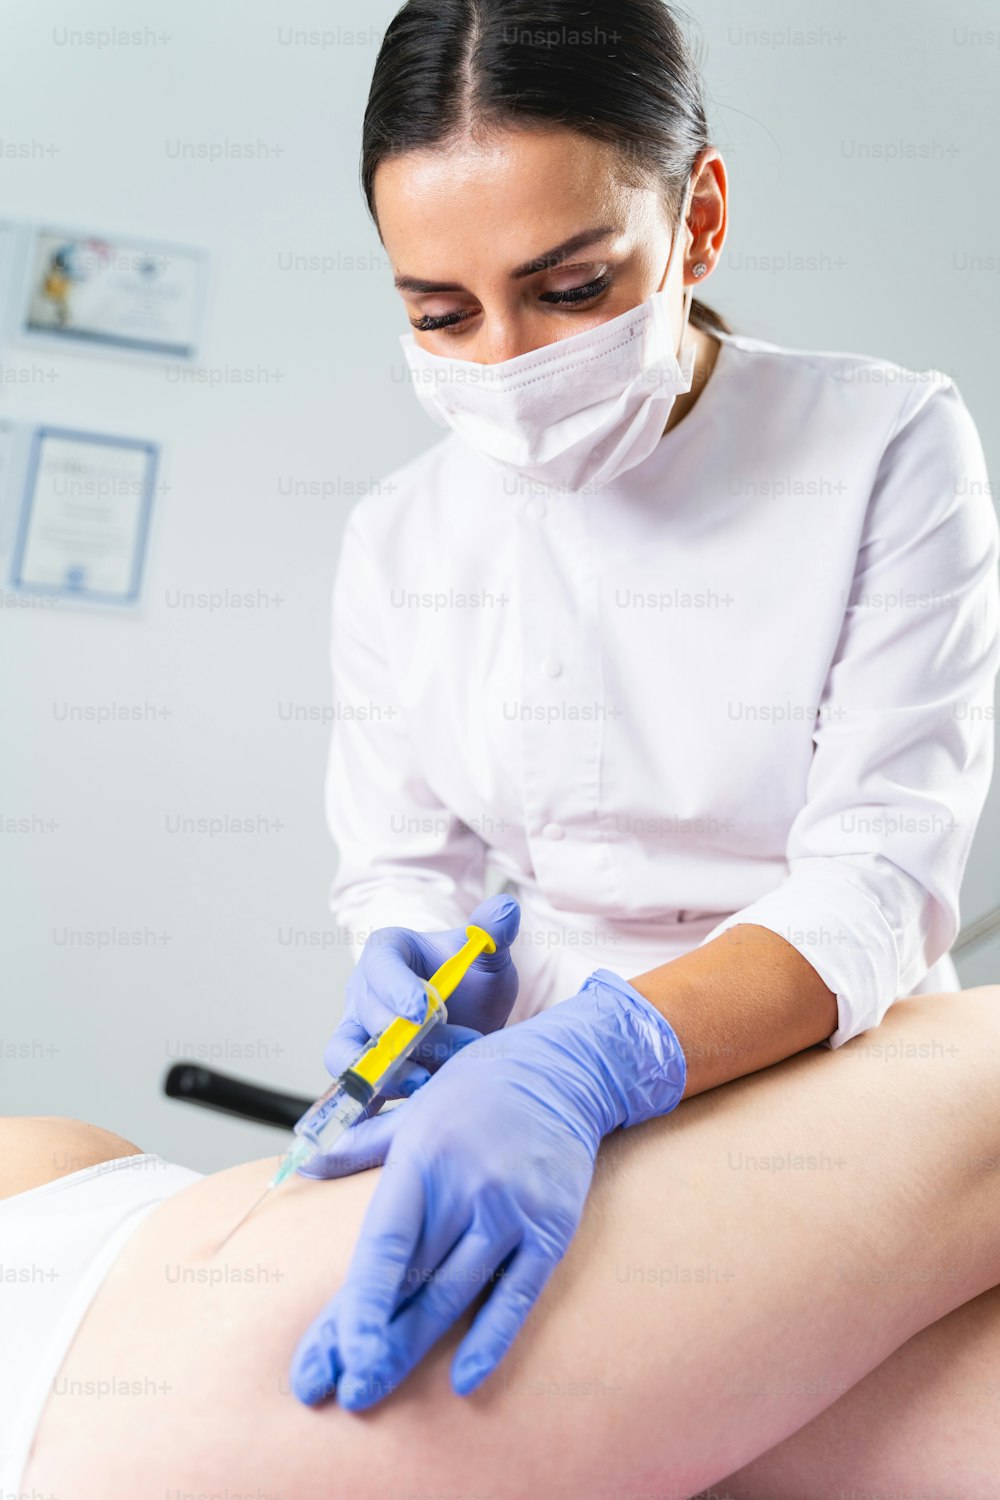 Dermatologista jovem de cabelos escuros em uma máscara facial conduzindo um procedimento de mesoterapia para estrias